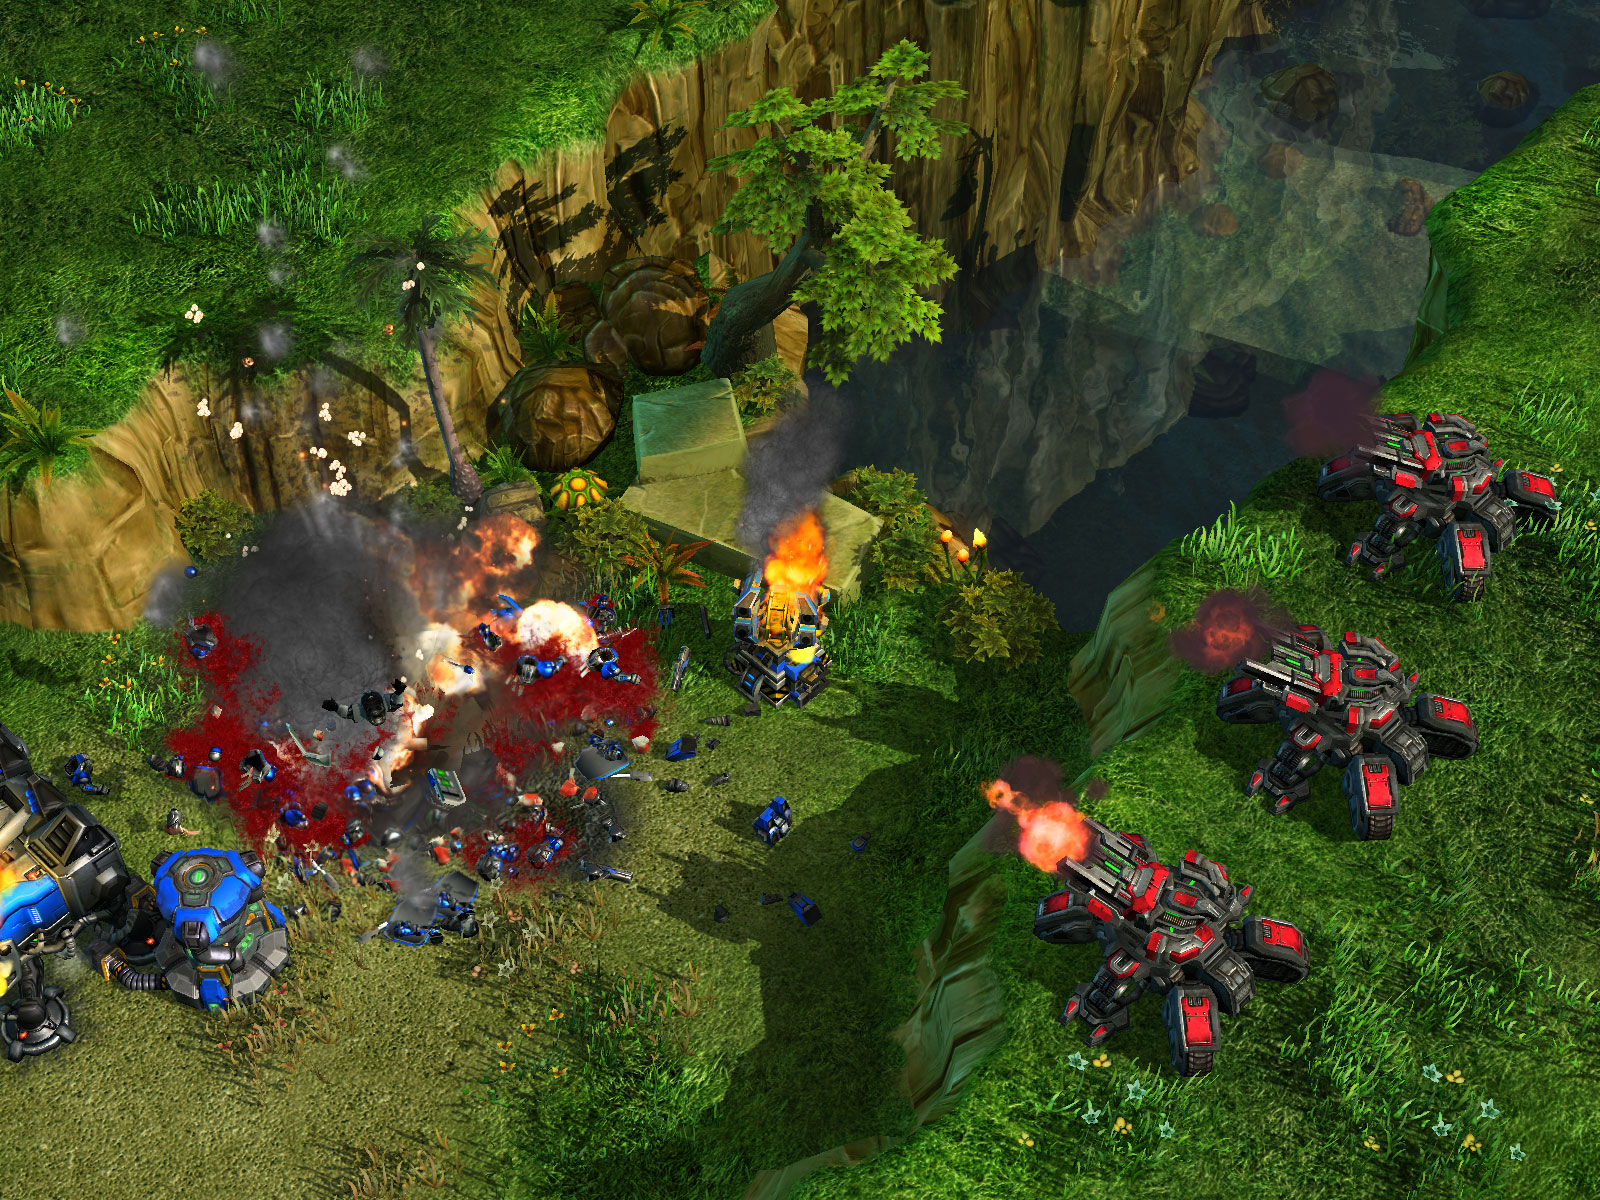 Immagine pubblicata in relazione al seguente contenuto: StarCraft II, Blizzard pubblica nuovi screenshot del game | Nome immagine: news6539_2.jpg